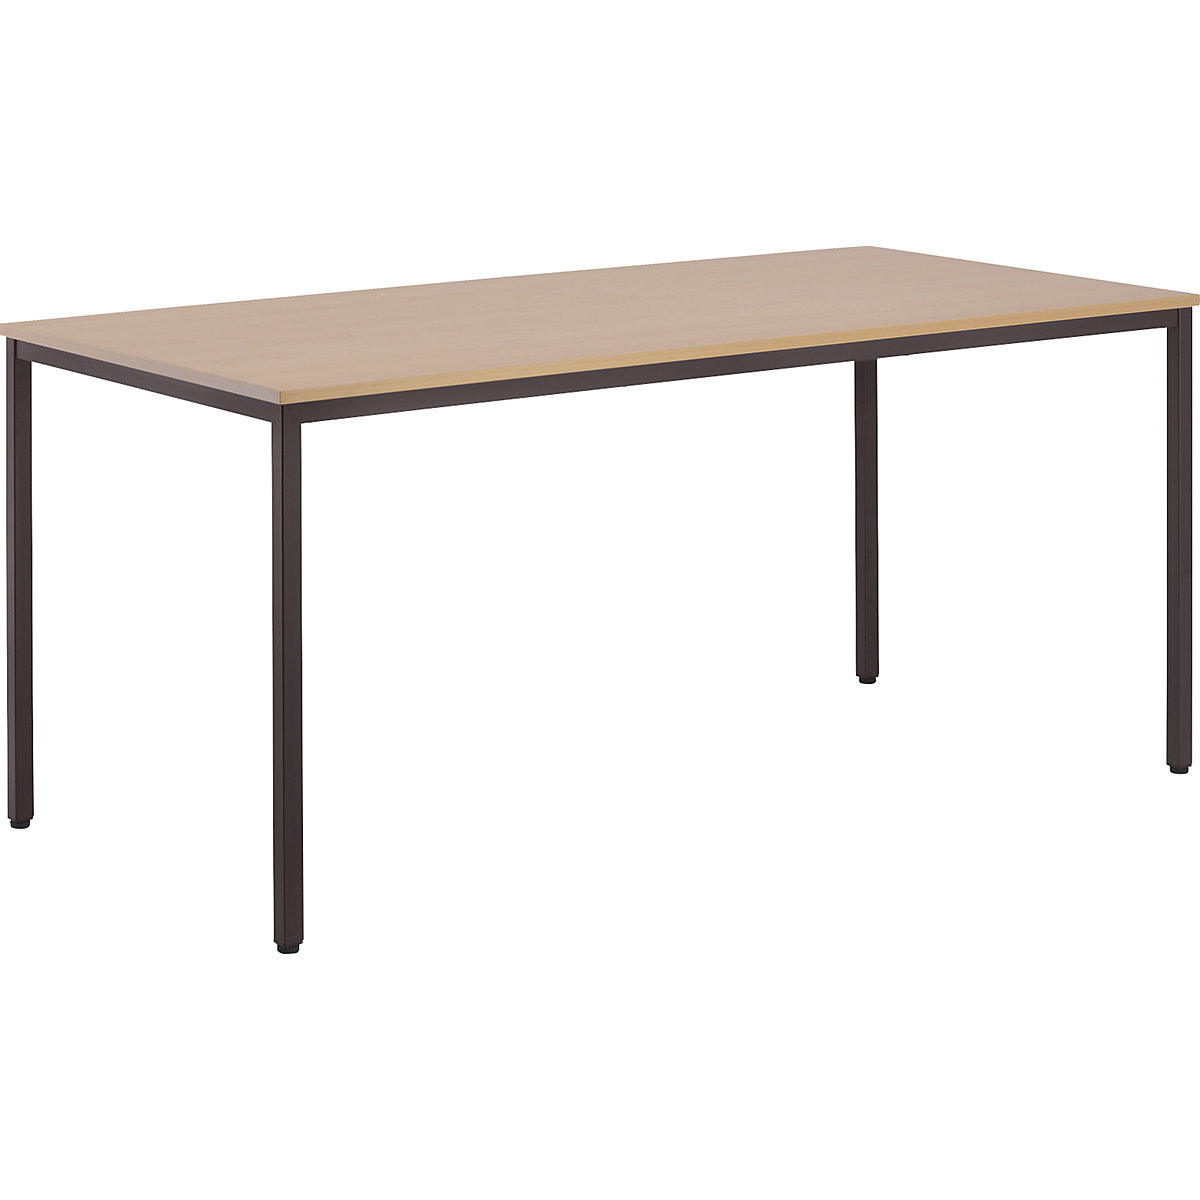 Víceúčelový stůl – eurokraft basic, v x š x h 720 x 1600 x 800 mm, deska v bukovém dekoru, podstavec šedohnědý-6